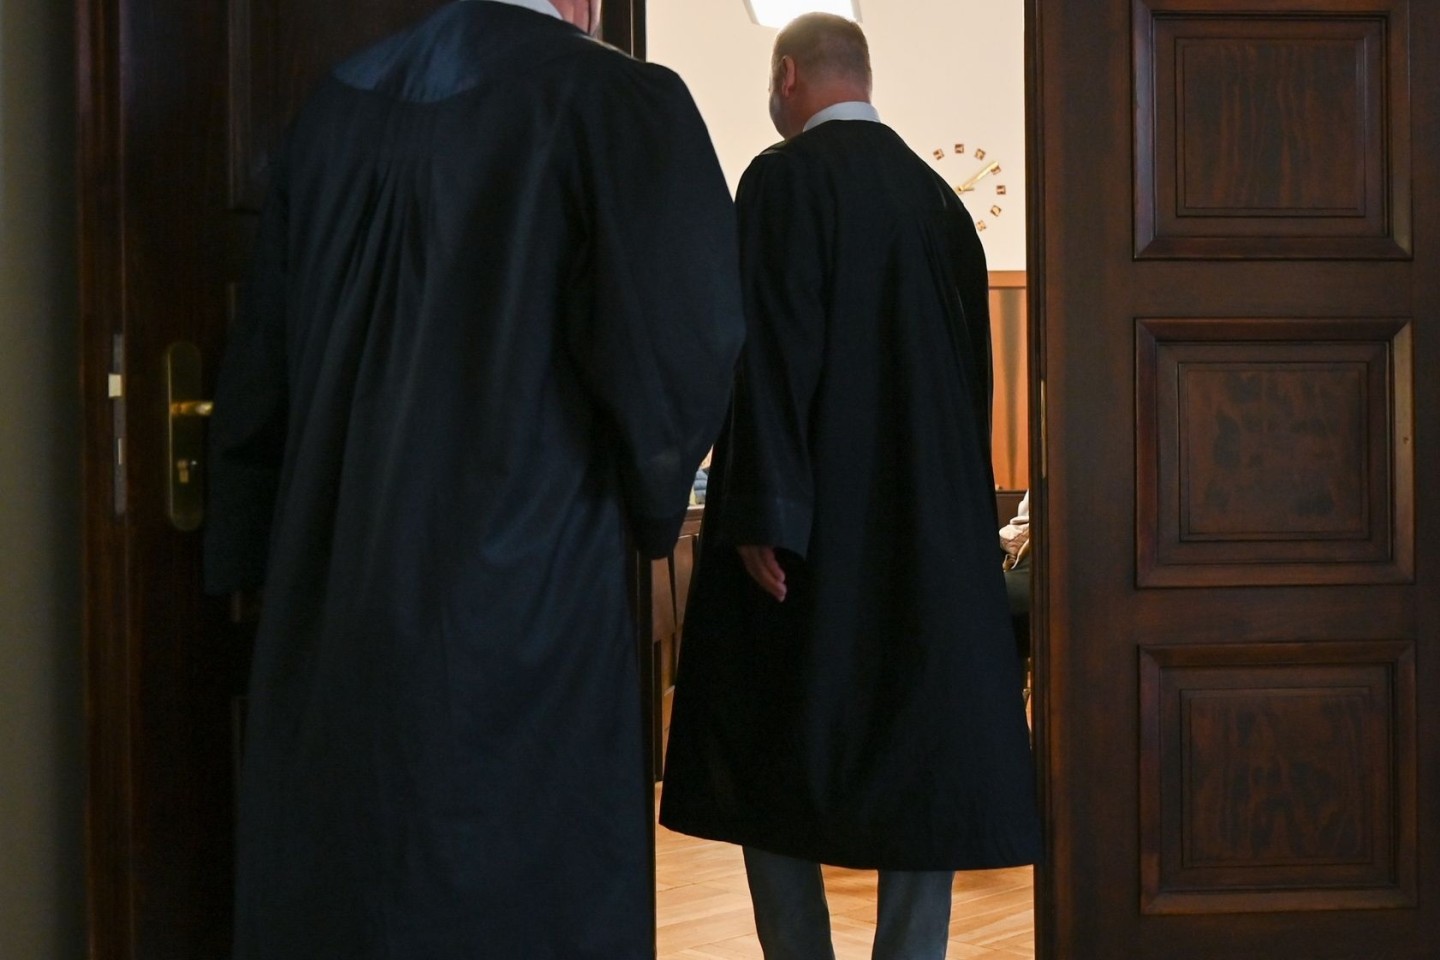 Die Anwälte Björn Seelbach (l) und Christian Kunath auf dem Weg in den Gerichtssaal.